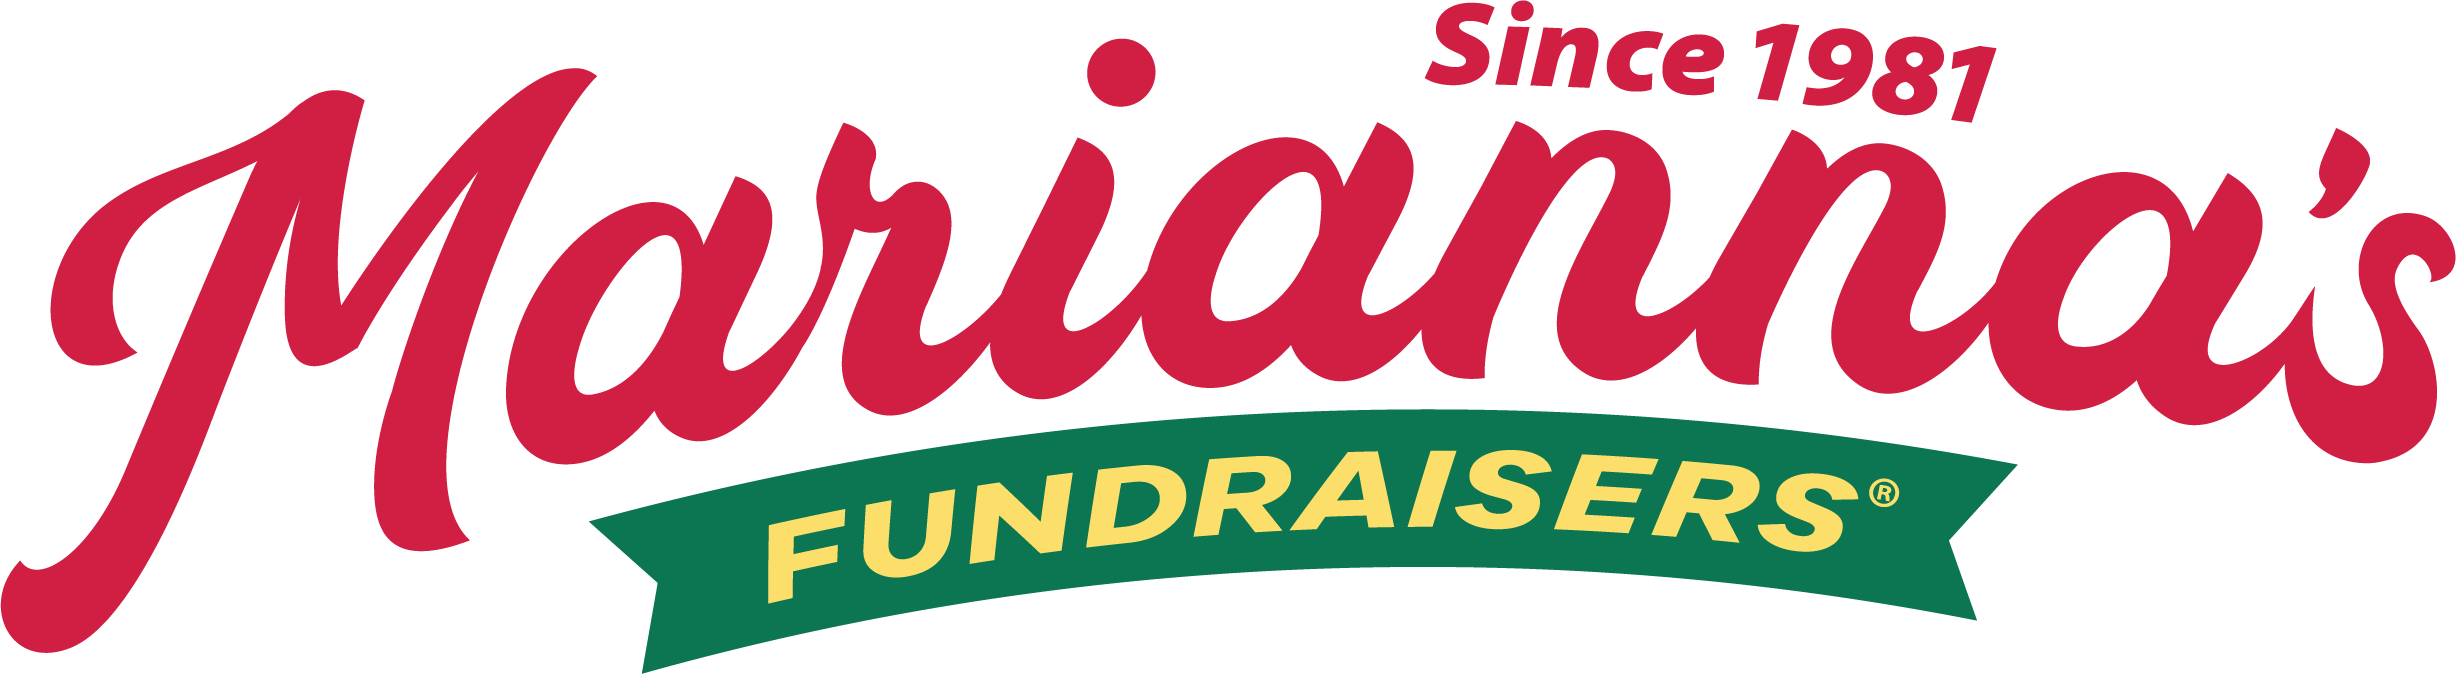 Marianna's Fundraisers Logo